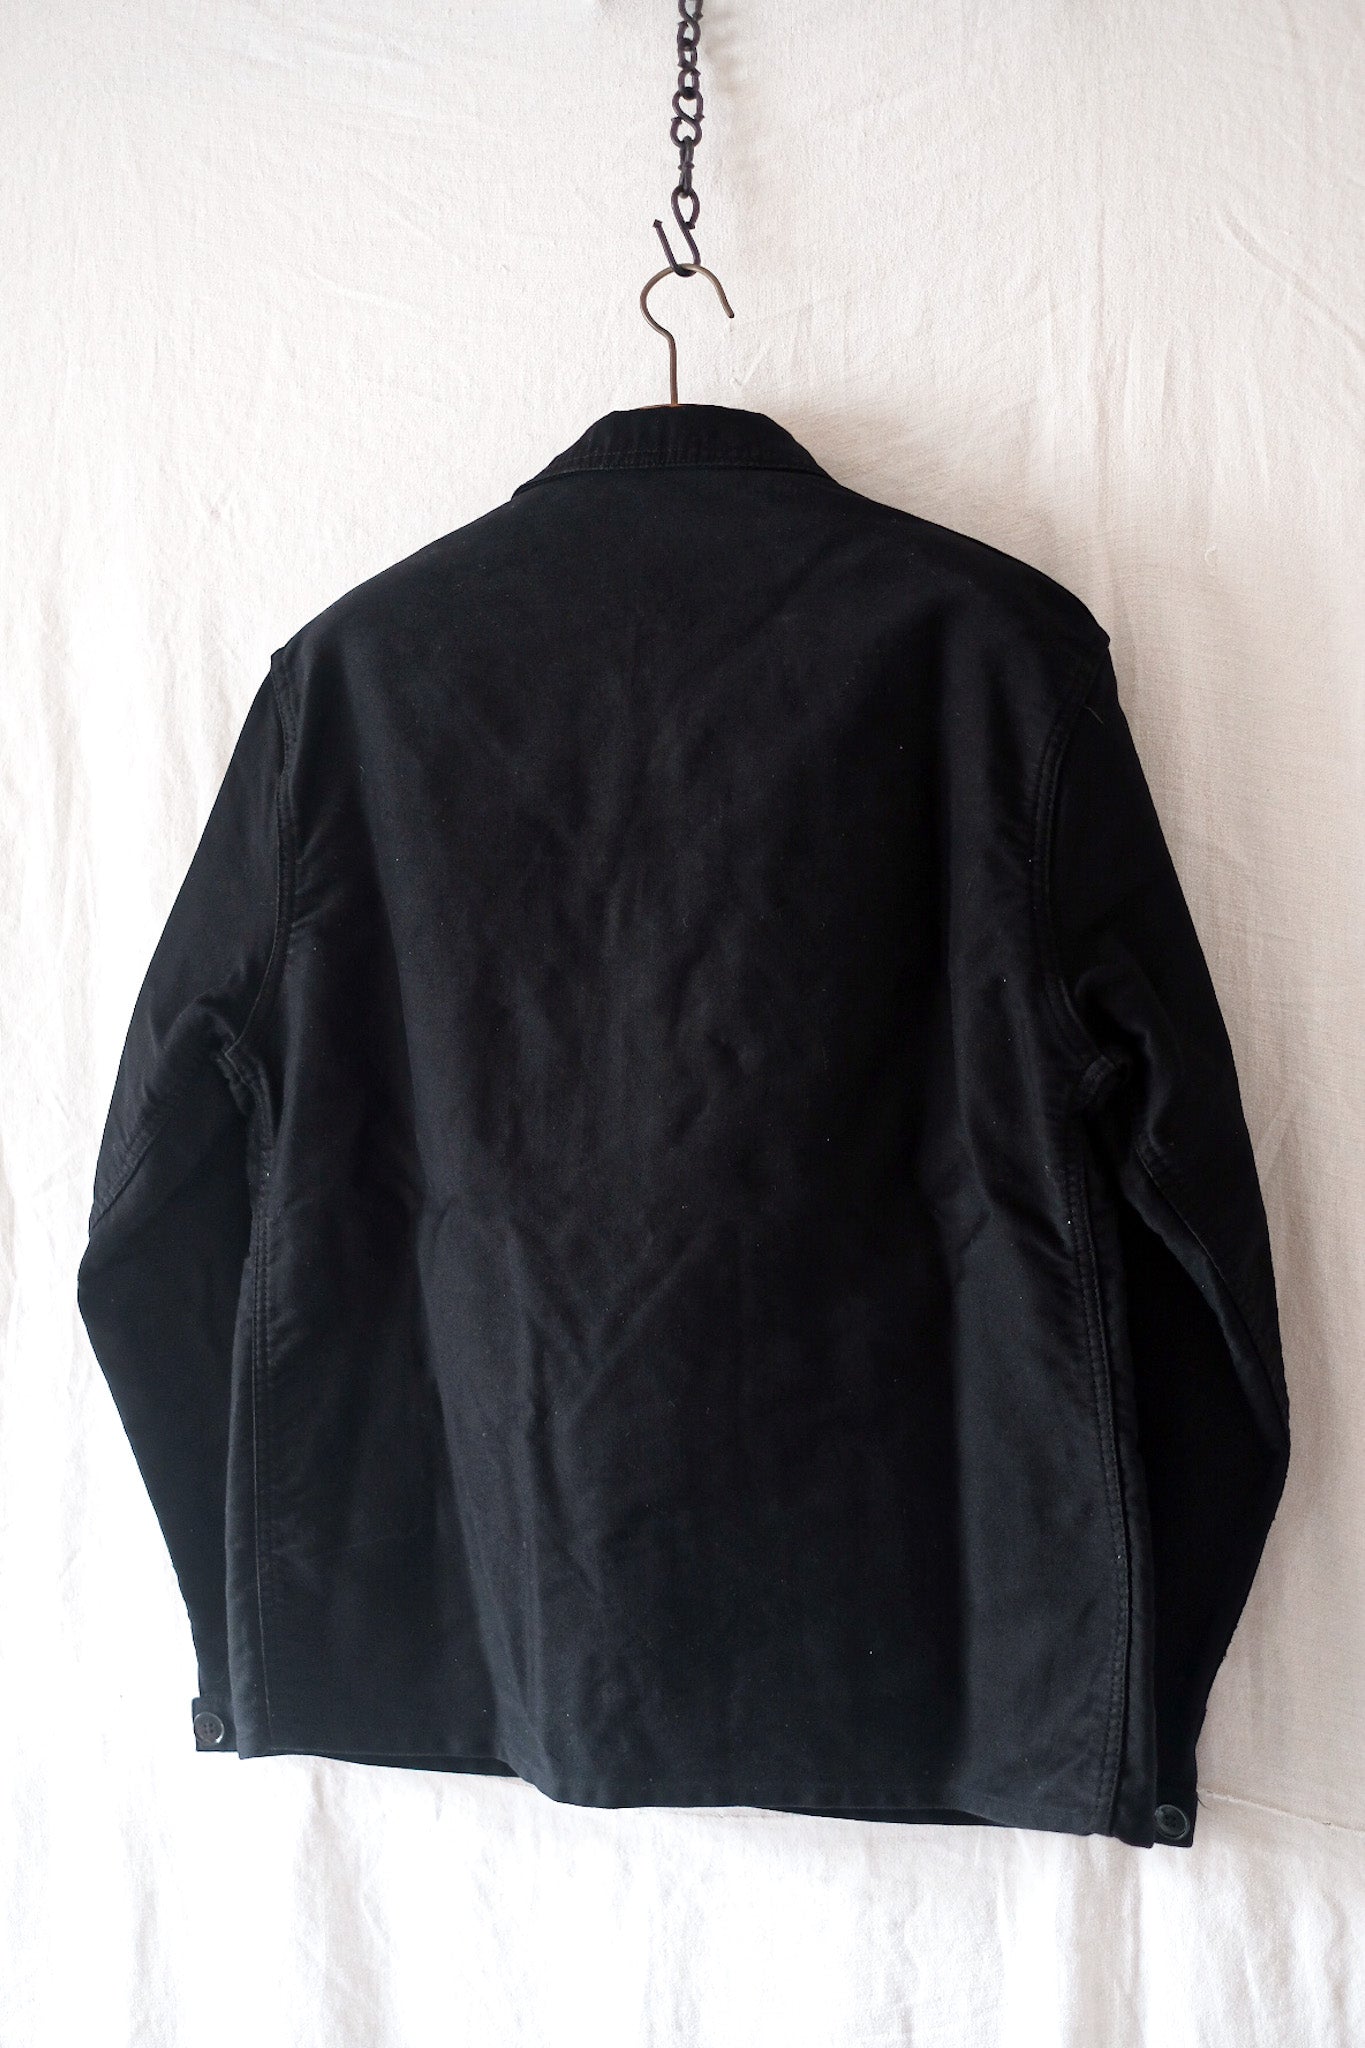 [〜50年代]法國復古“ Le Montst。Michel”黑色摩爾金工作夾克